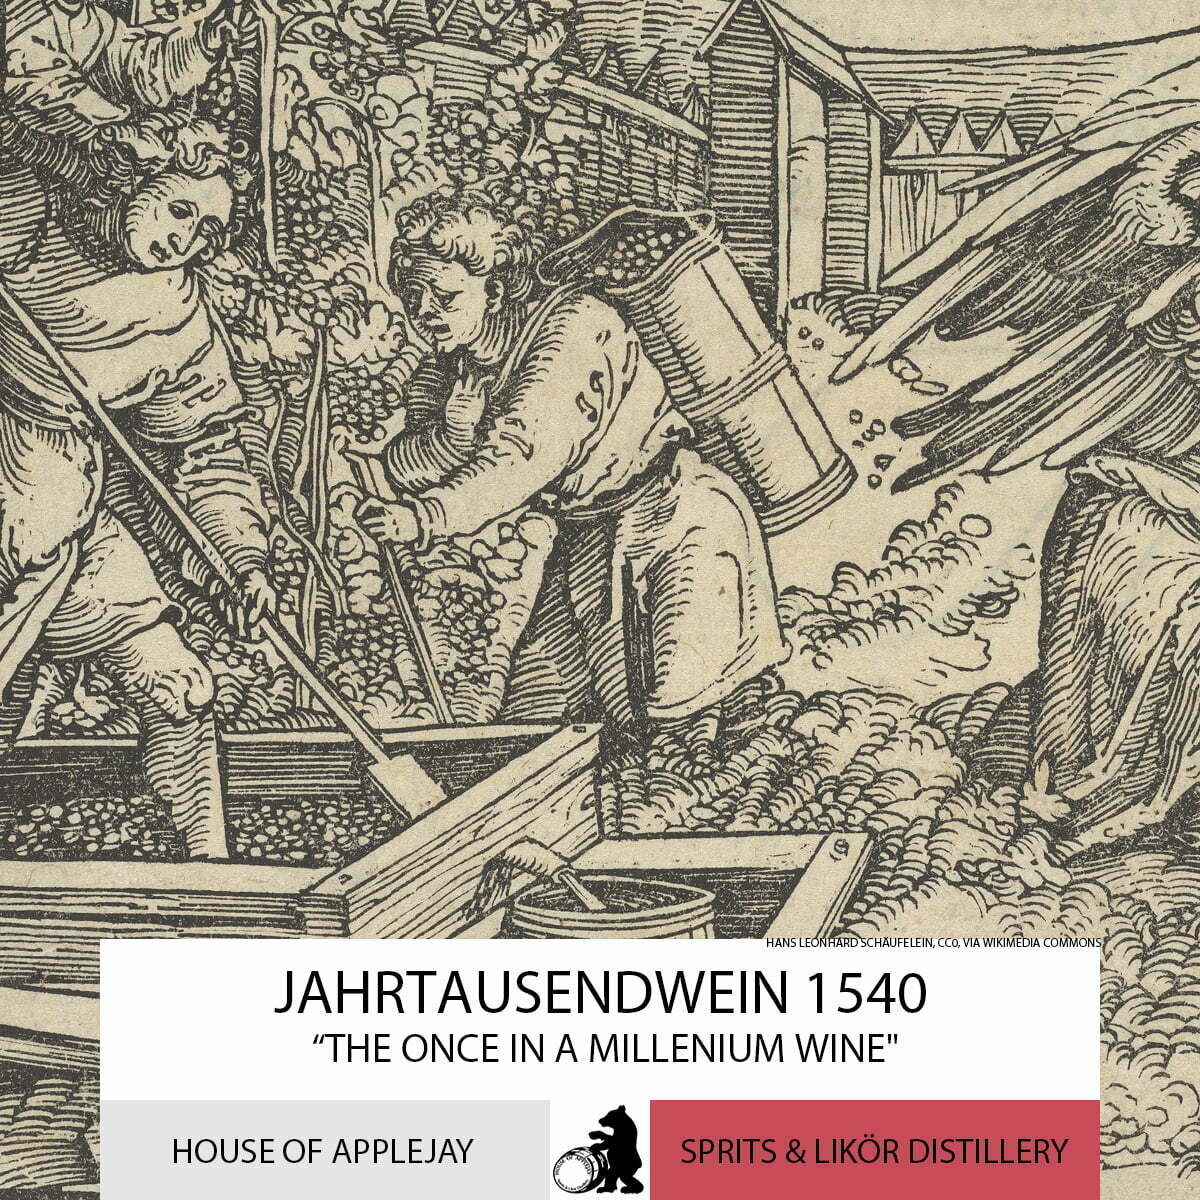 The Jahrtausendwein 1540